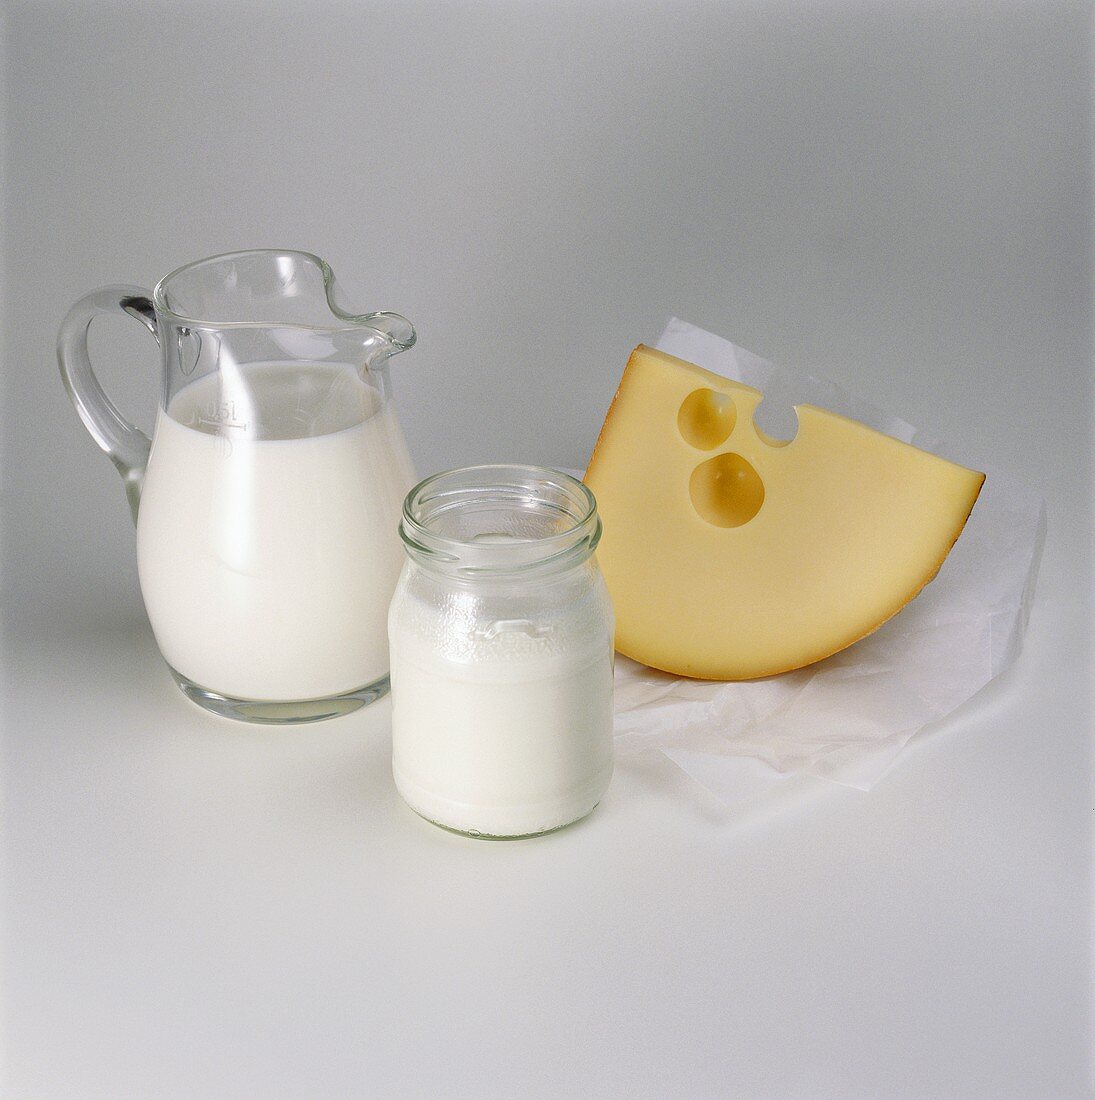 Sahne im Glaskännchen, Joghurt im Glas und ein Stück Käse